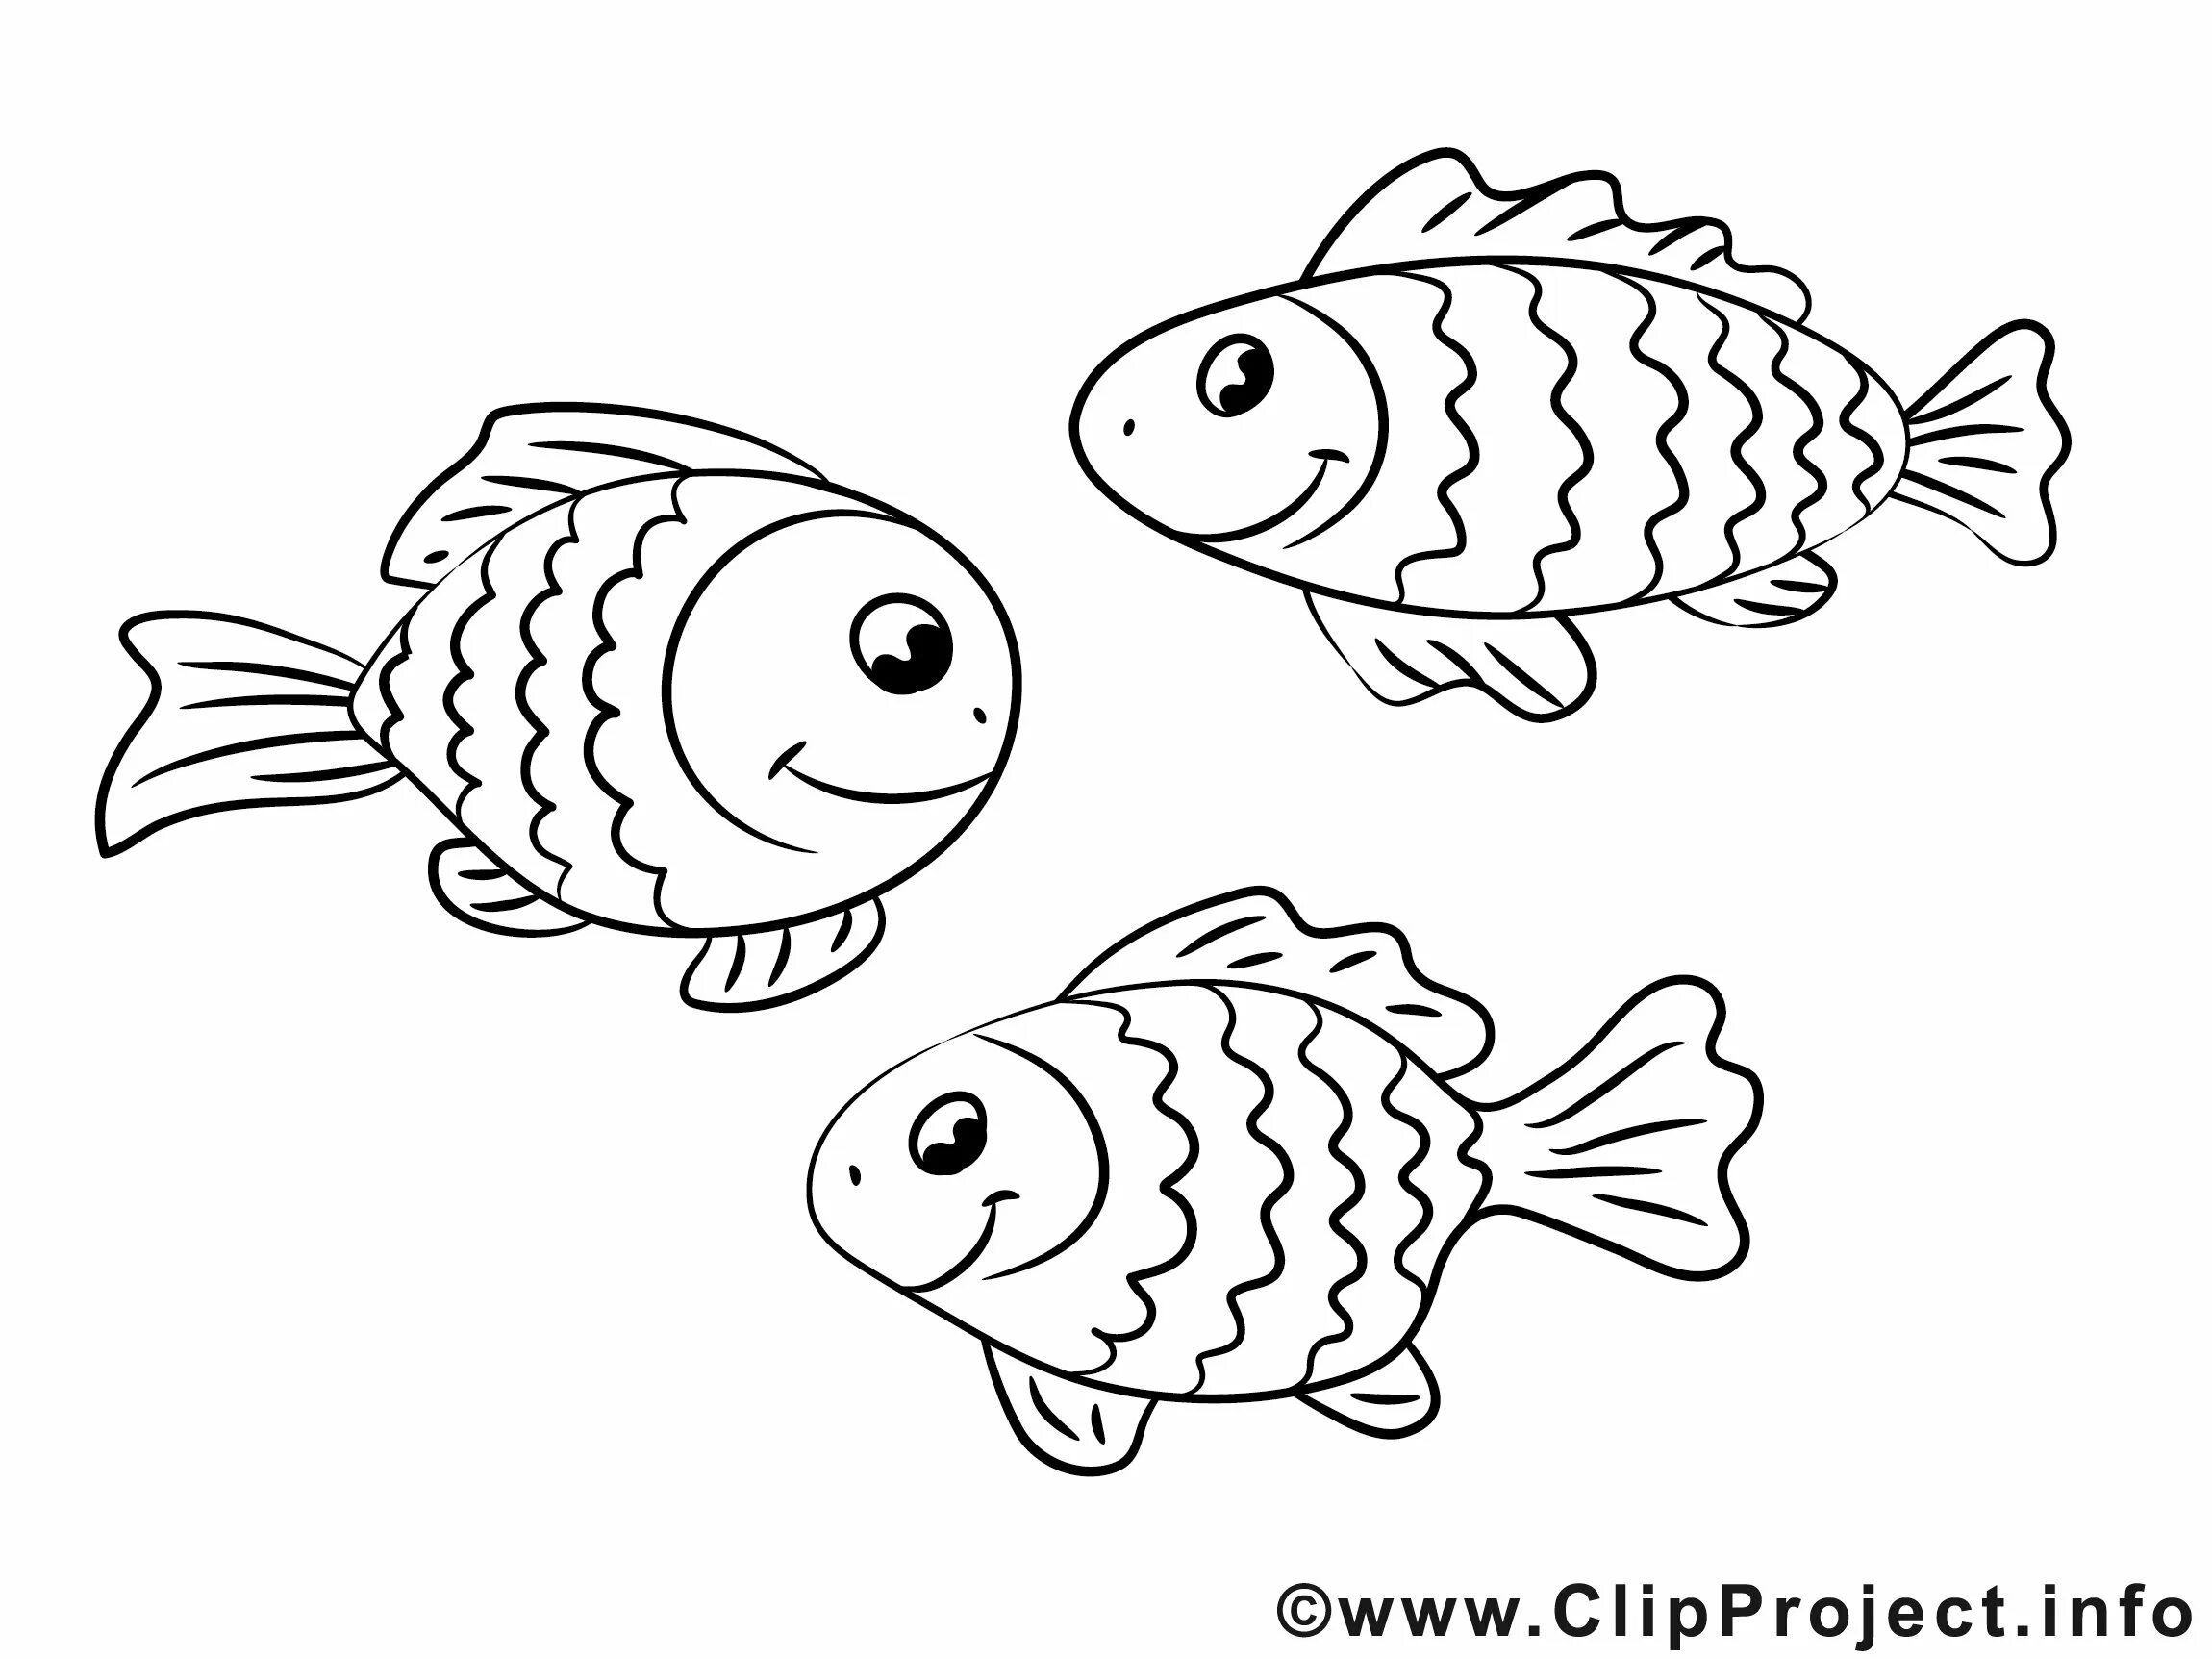 Раскраска рыбы для детей 7 лет. Раскраска рыбка. Рыба раскраска для детей. Рыбка раскраска для детей. Картинки для раскрашивания рыбки.